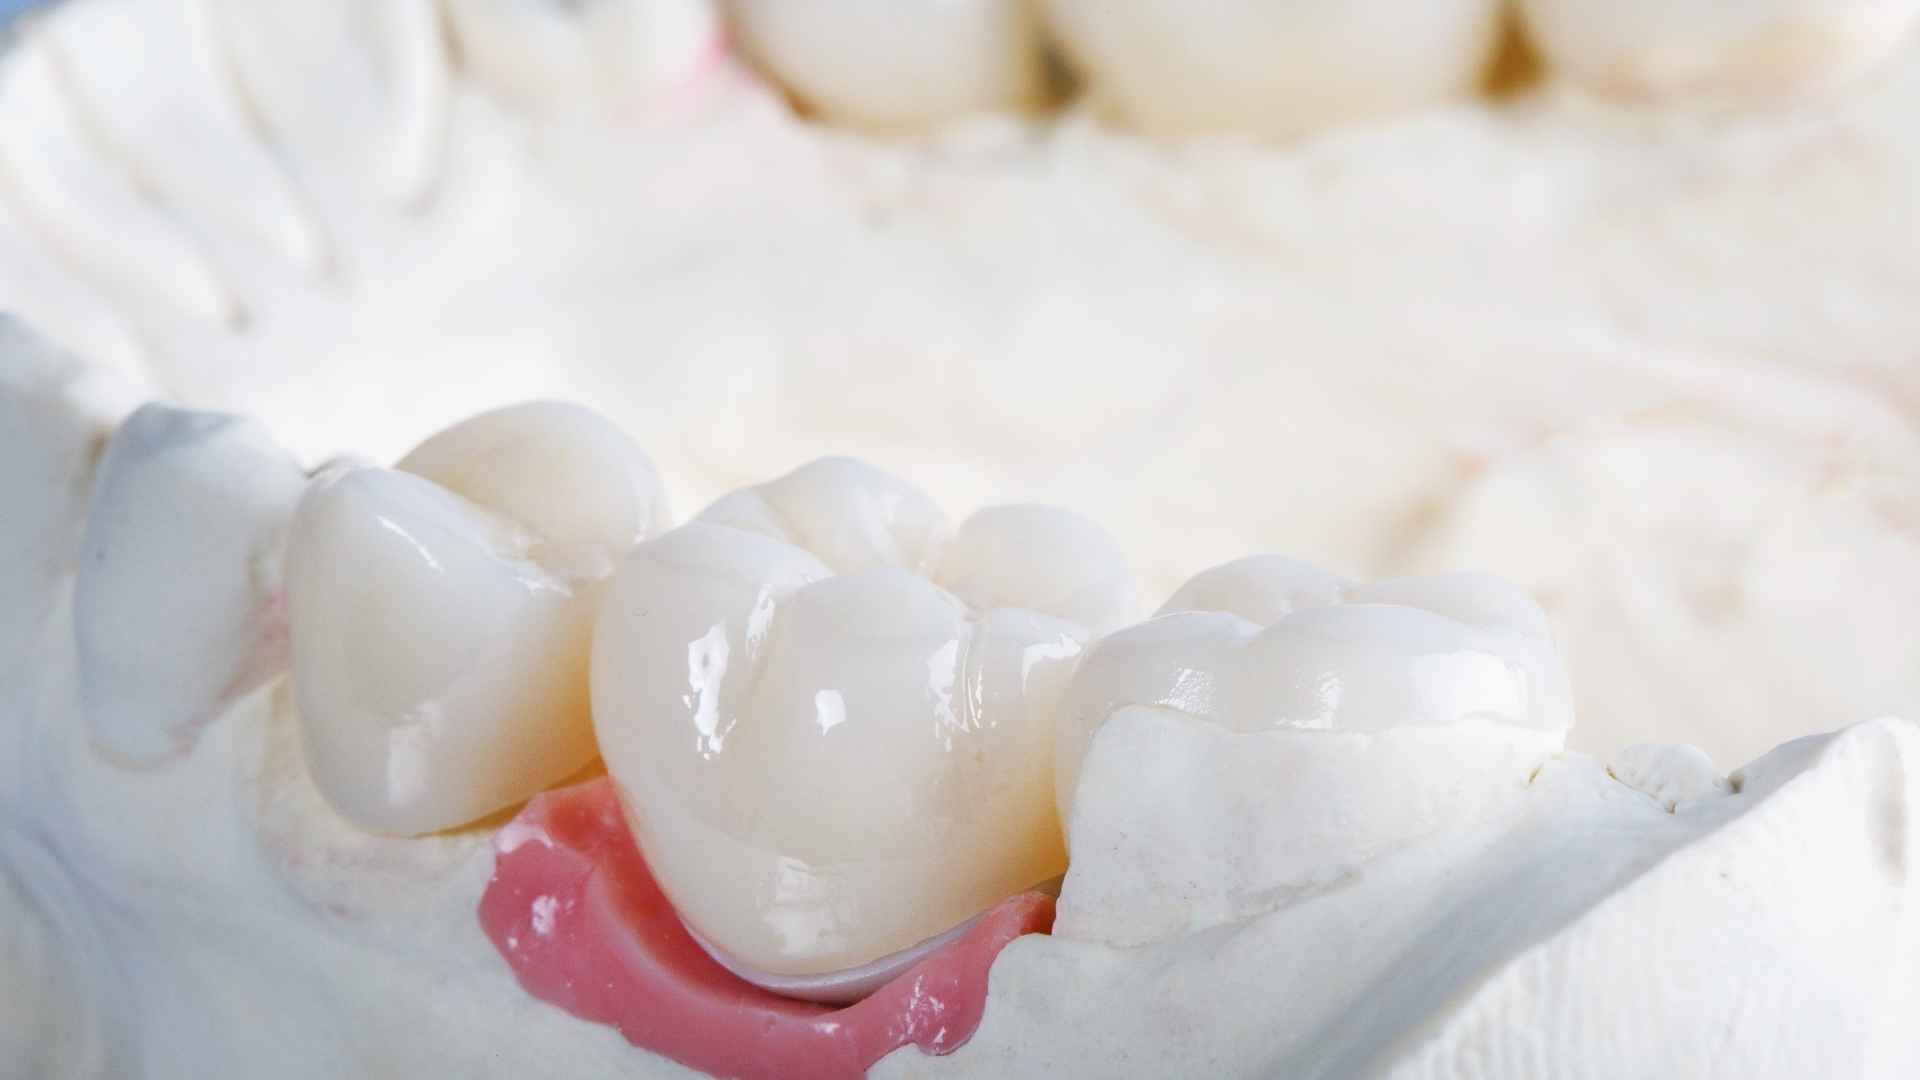 מדוע כתרי זירקוניה הם הבחירה האולטימטיבית לשיקום שיניים?